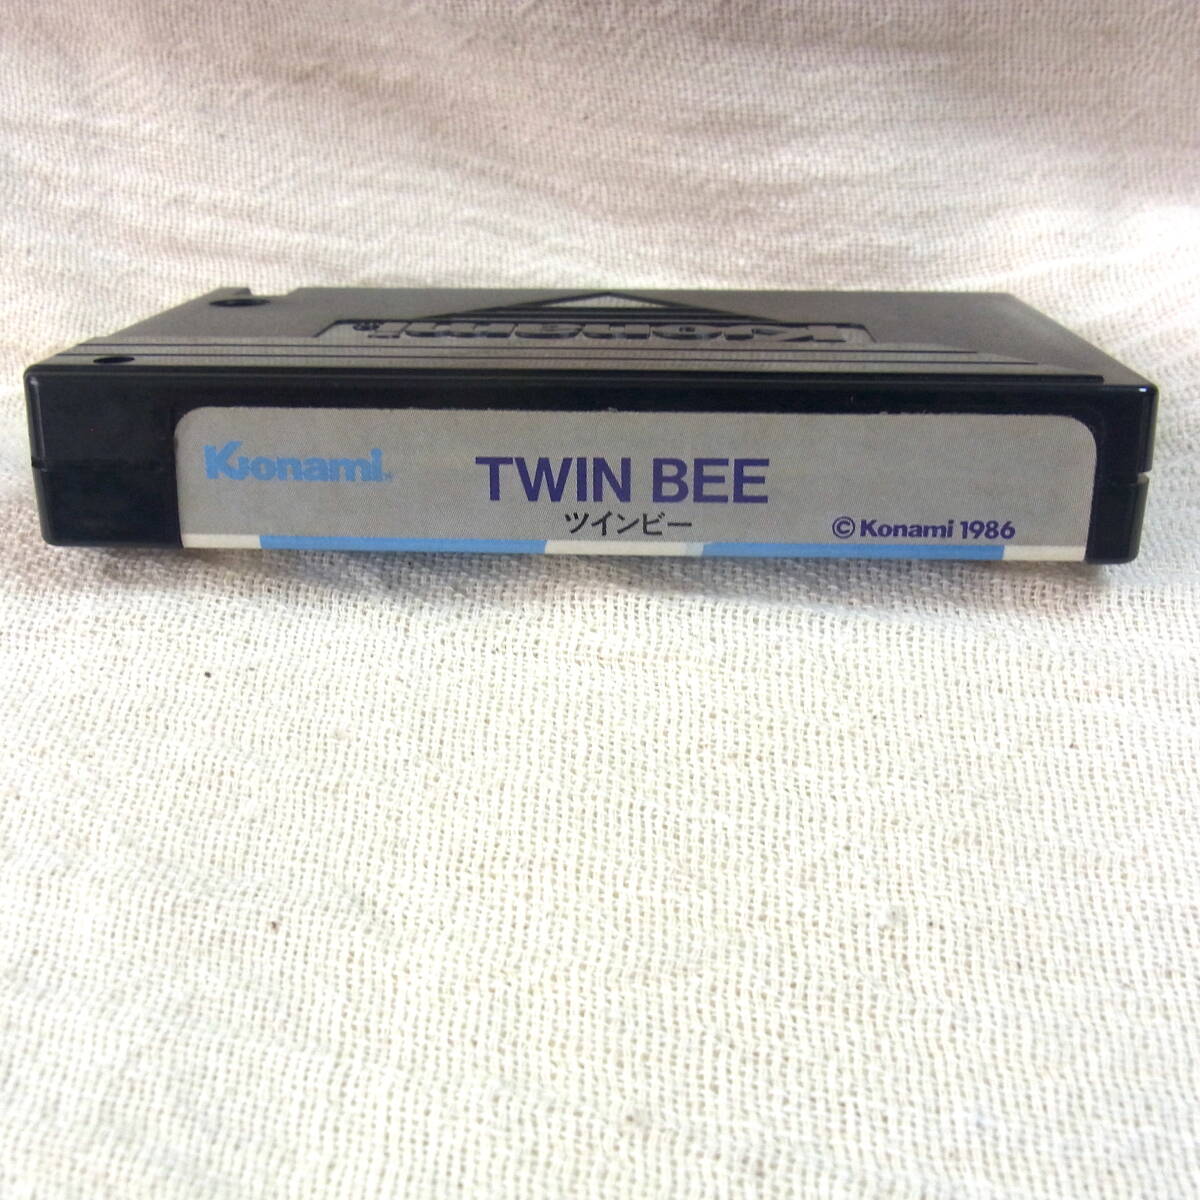 MSX[ twin Be TWIN BEE]RC740|CASIO|Konami| Showa Retro game |ROM cartridge | Casio | Konami | soft | Famicom 